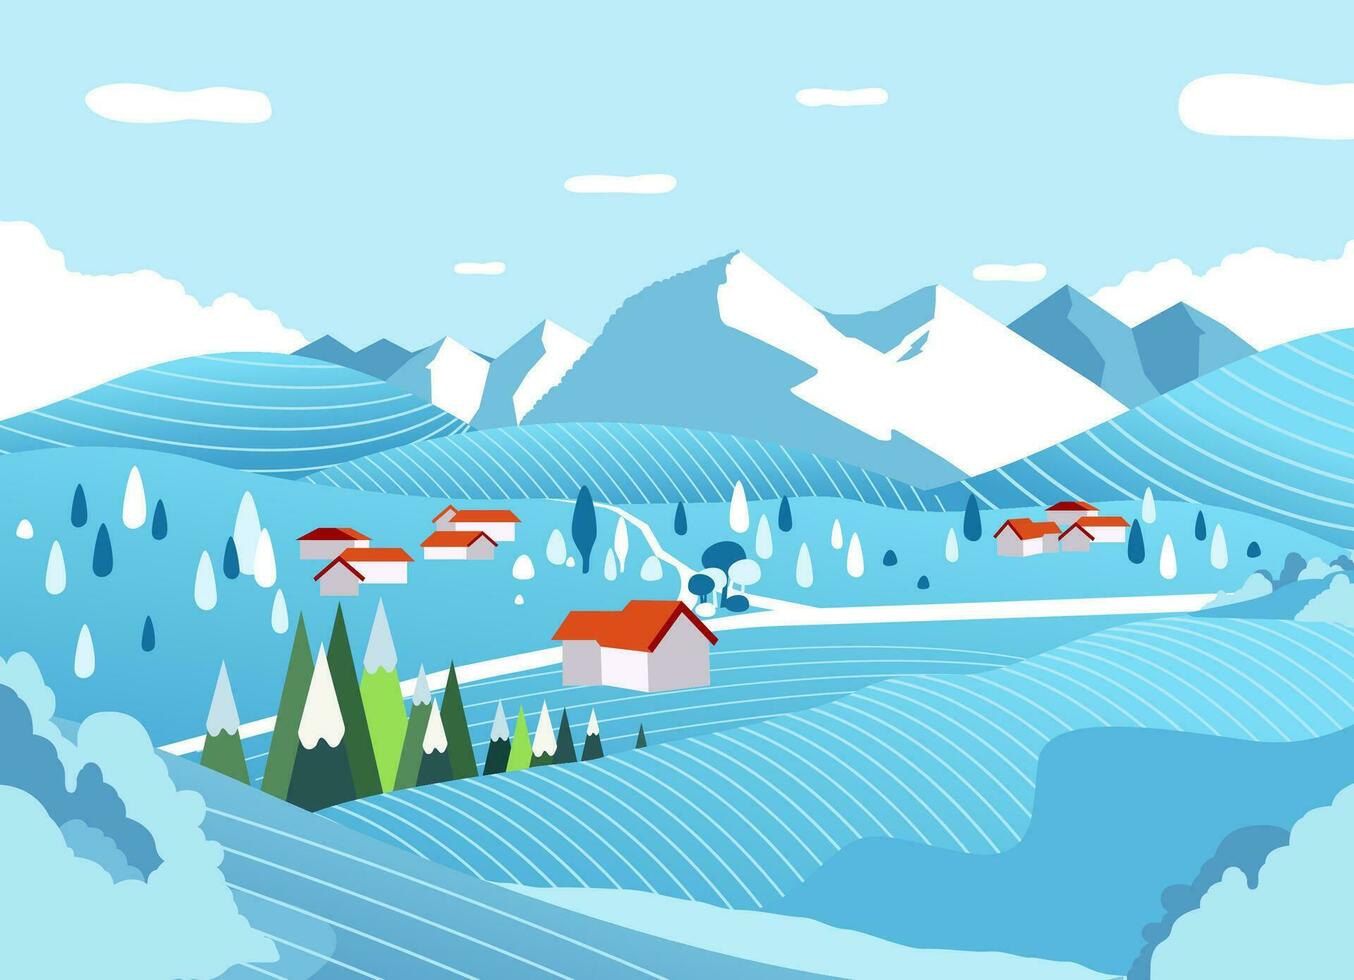 landelijk landschap in winter met berg in de achtergrond vlak vector illustratie